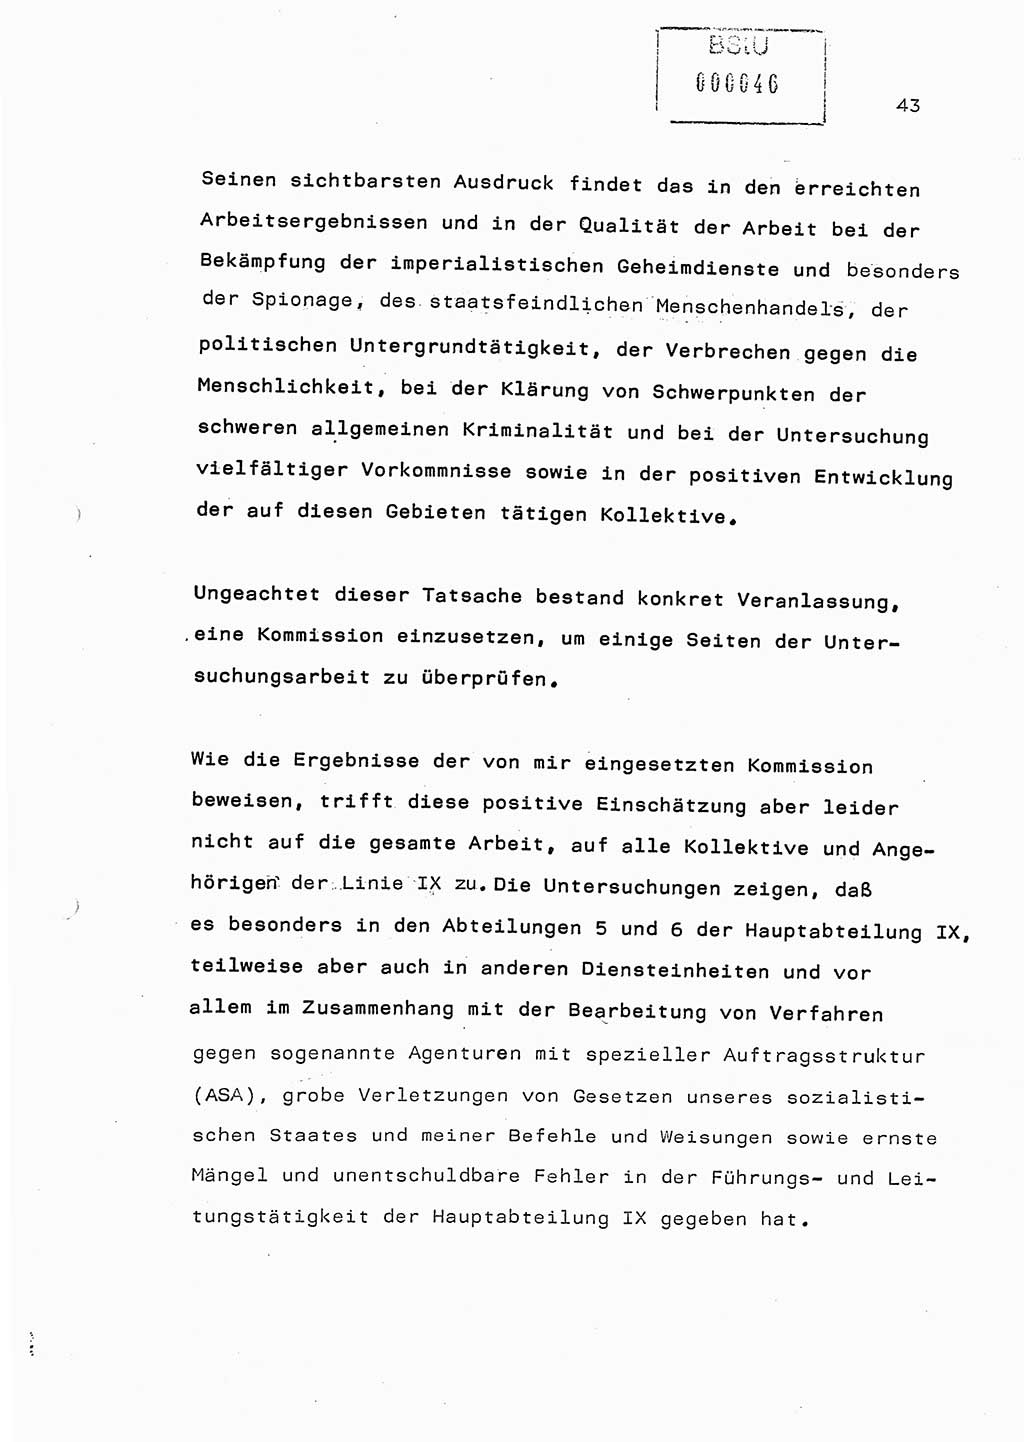 Referat (Generaloberst Erich Mielke) auf der Zentralen Dienstkonferenz am 24.5.1979 [Ministerium für Staatssicherheit (MfS), Deutsche Demokratische Republik (DDR), Der Minister], Berlin 1979, Seite 43 (Ref. DK DDR MfS Min. /79 1979, S. 43)